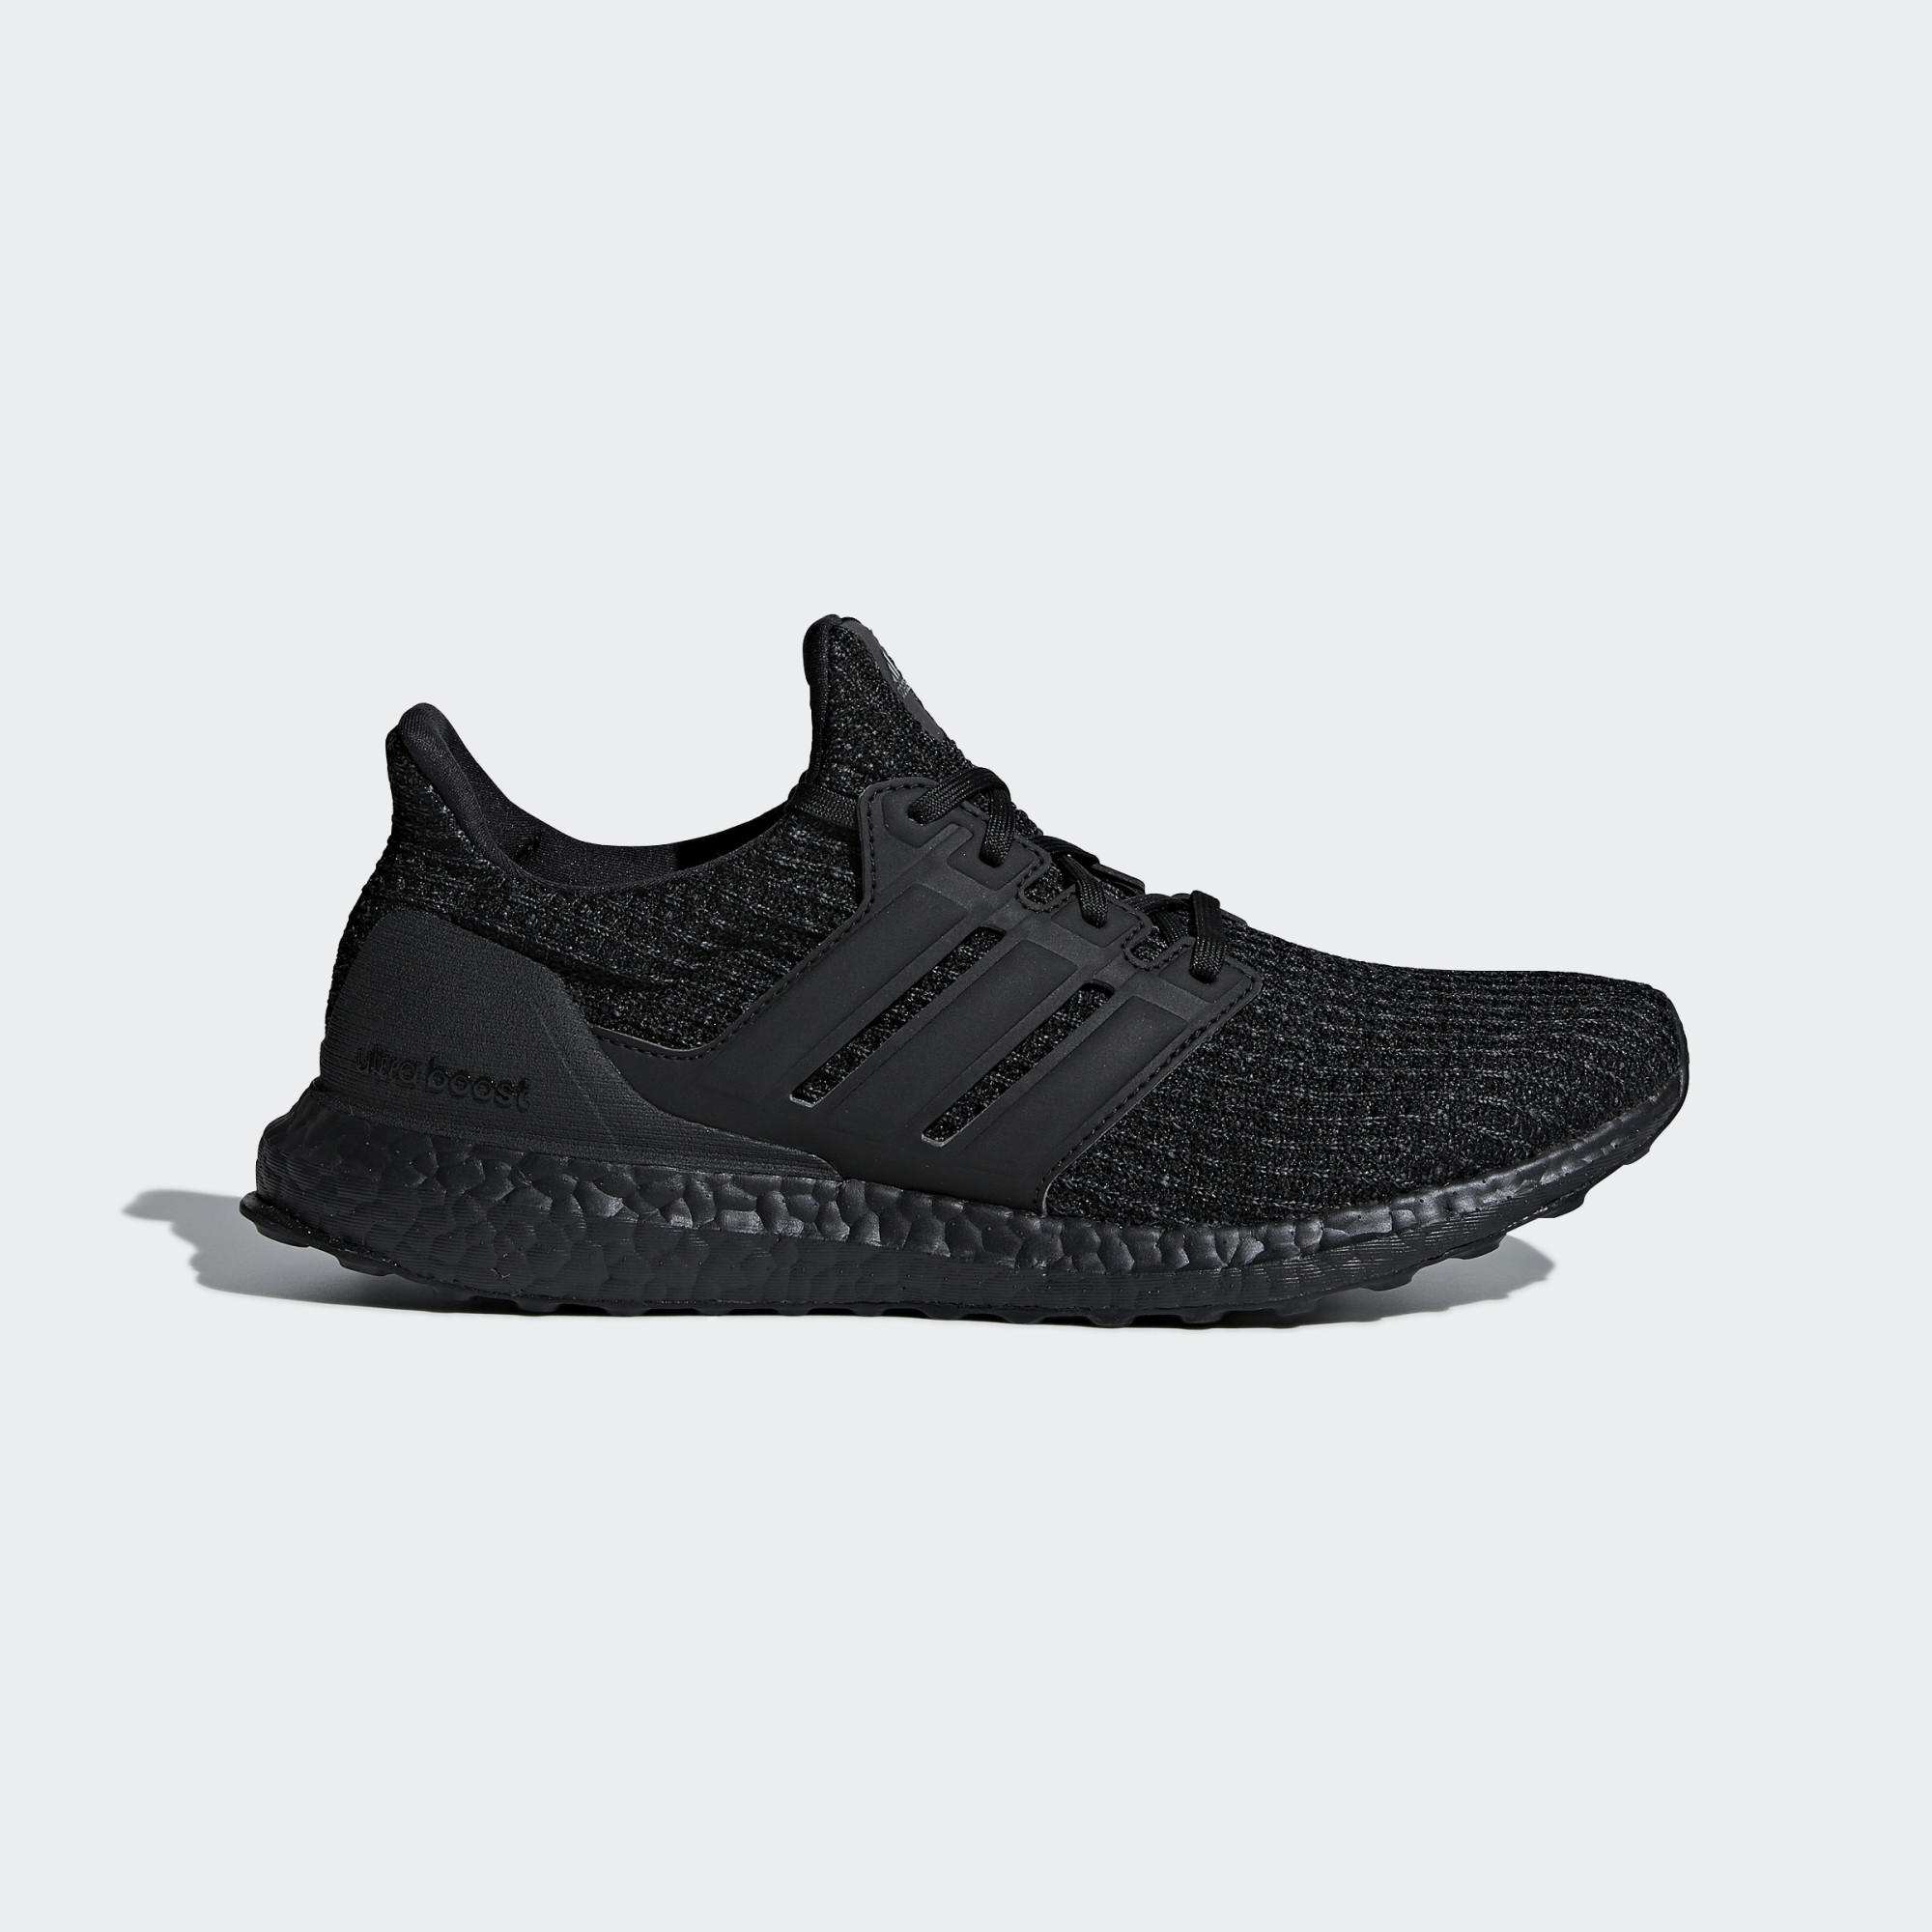 Ultraboost Triple black release yesterday : r/Sneakers